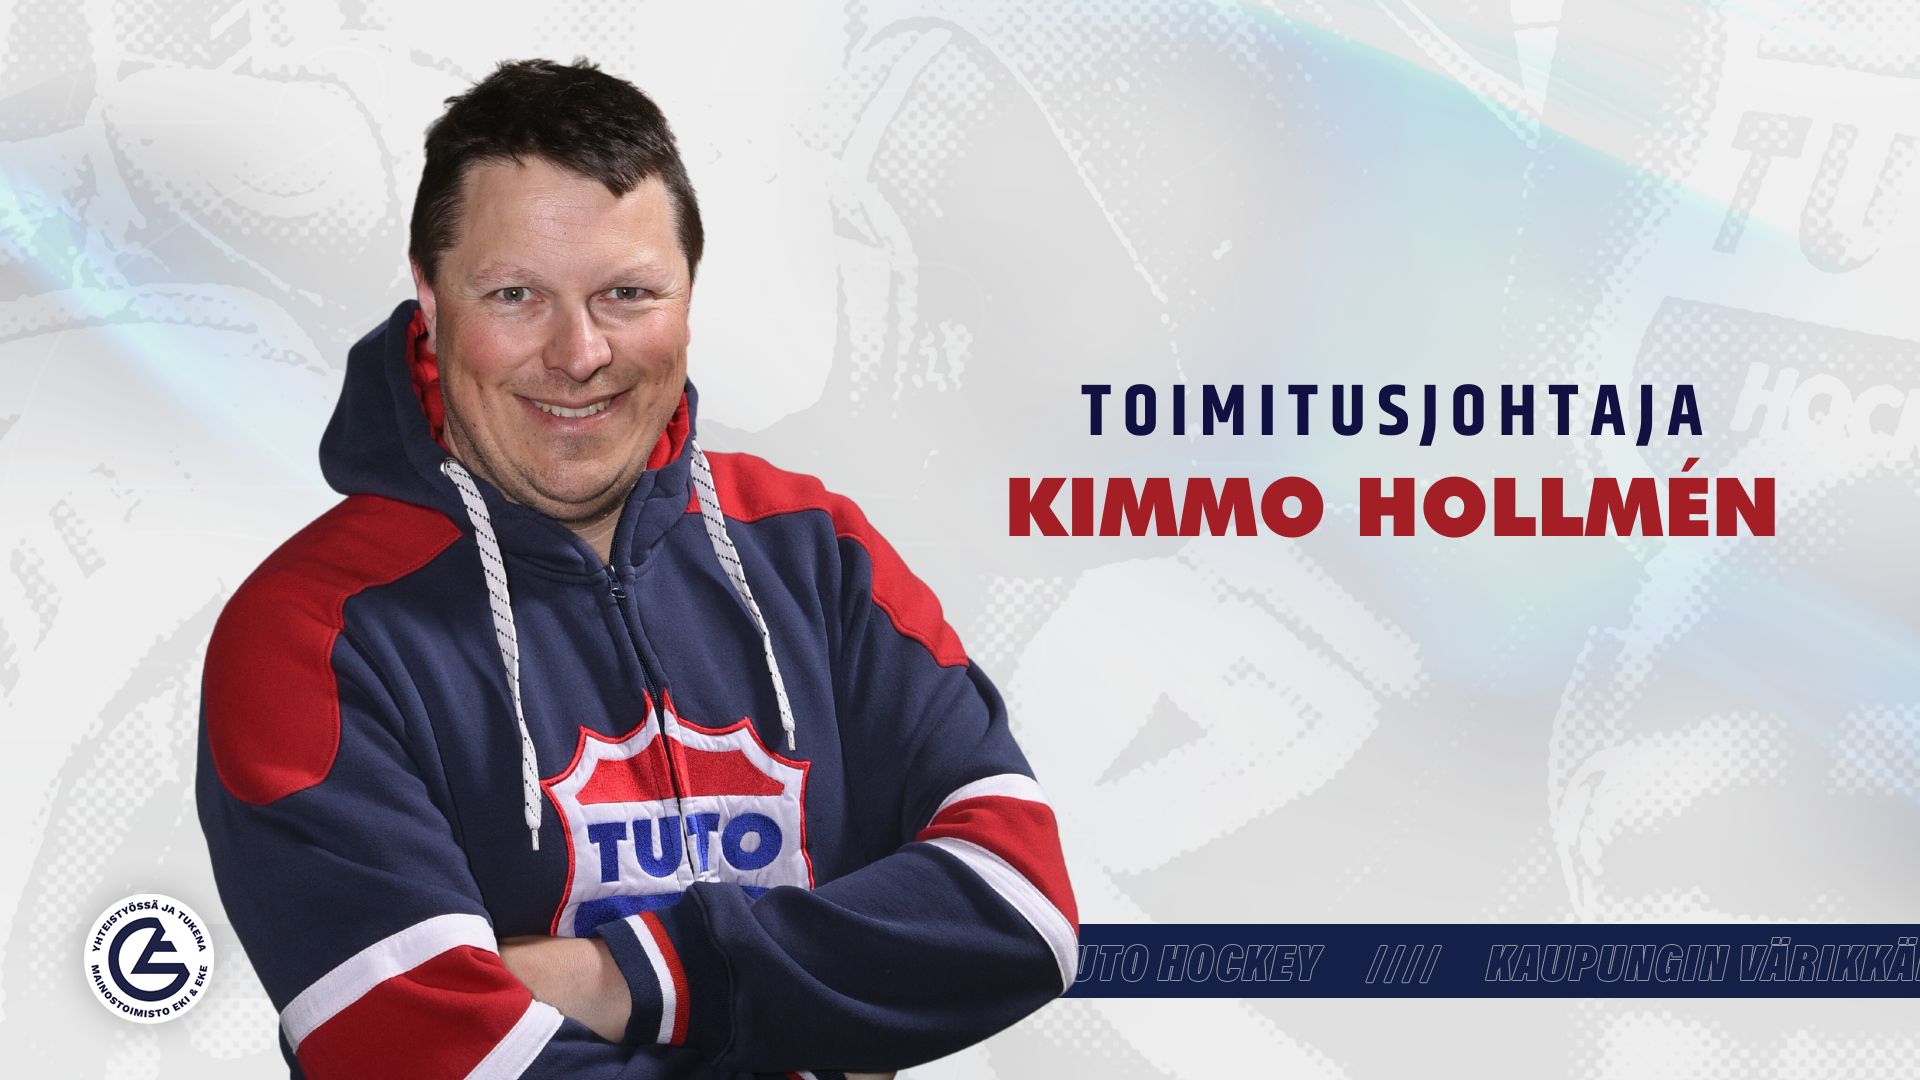 www.tutohockey.fi